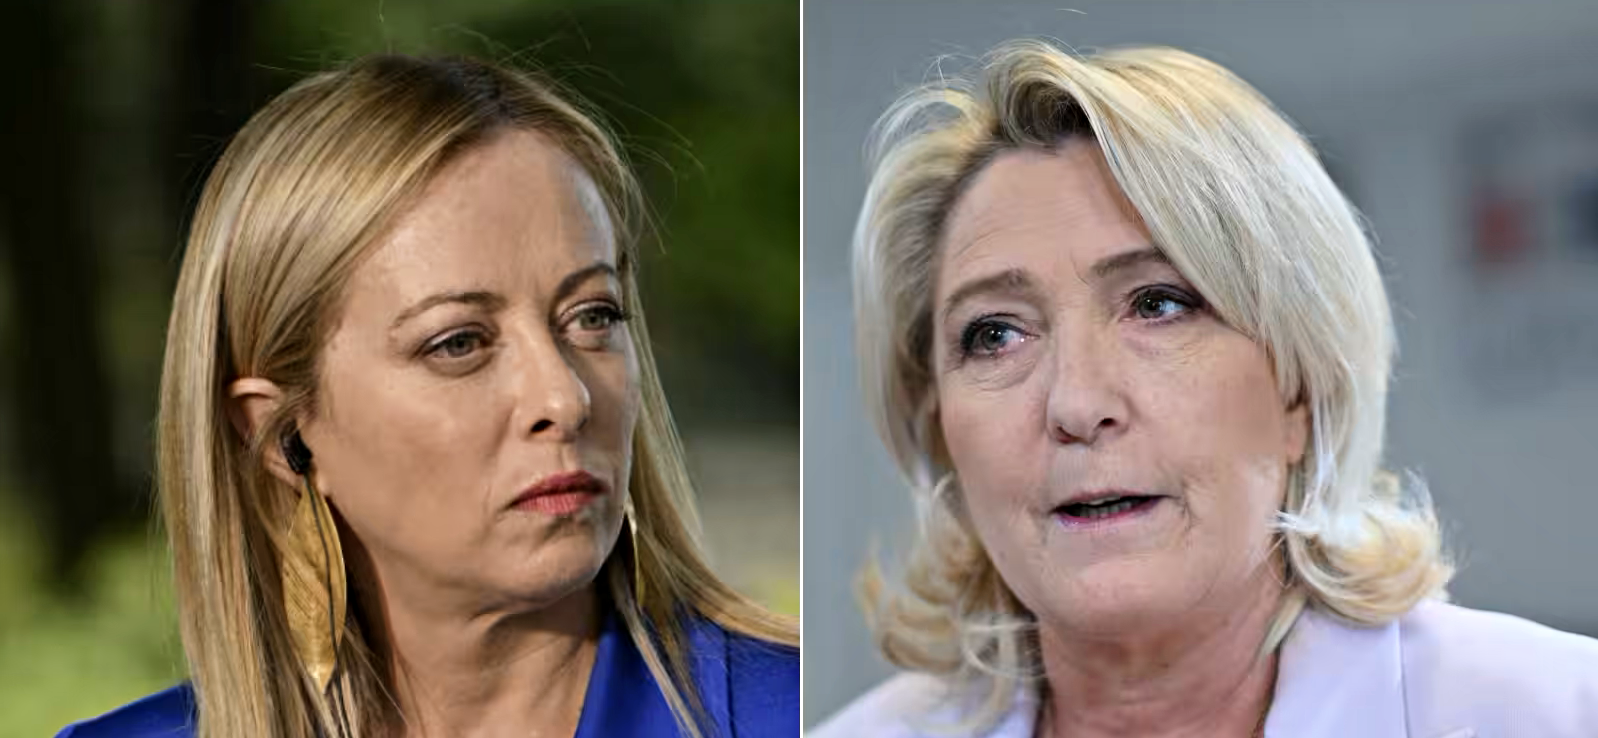 Riunione delle destre europee: Meloni Le Pen, prove disgelo (a distanza) a summit Vox